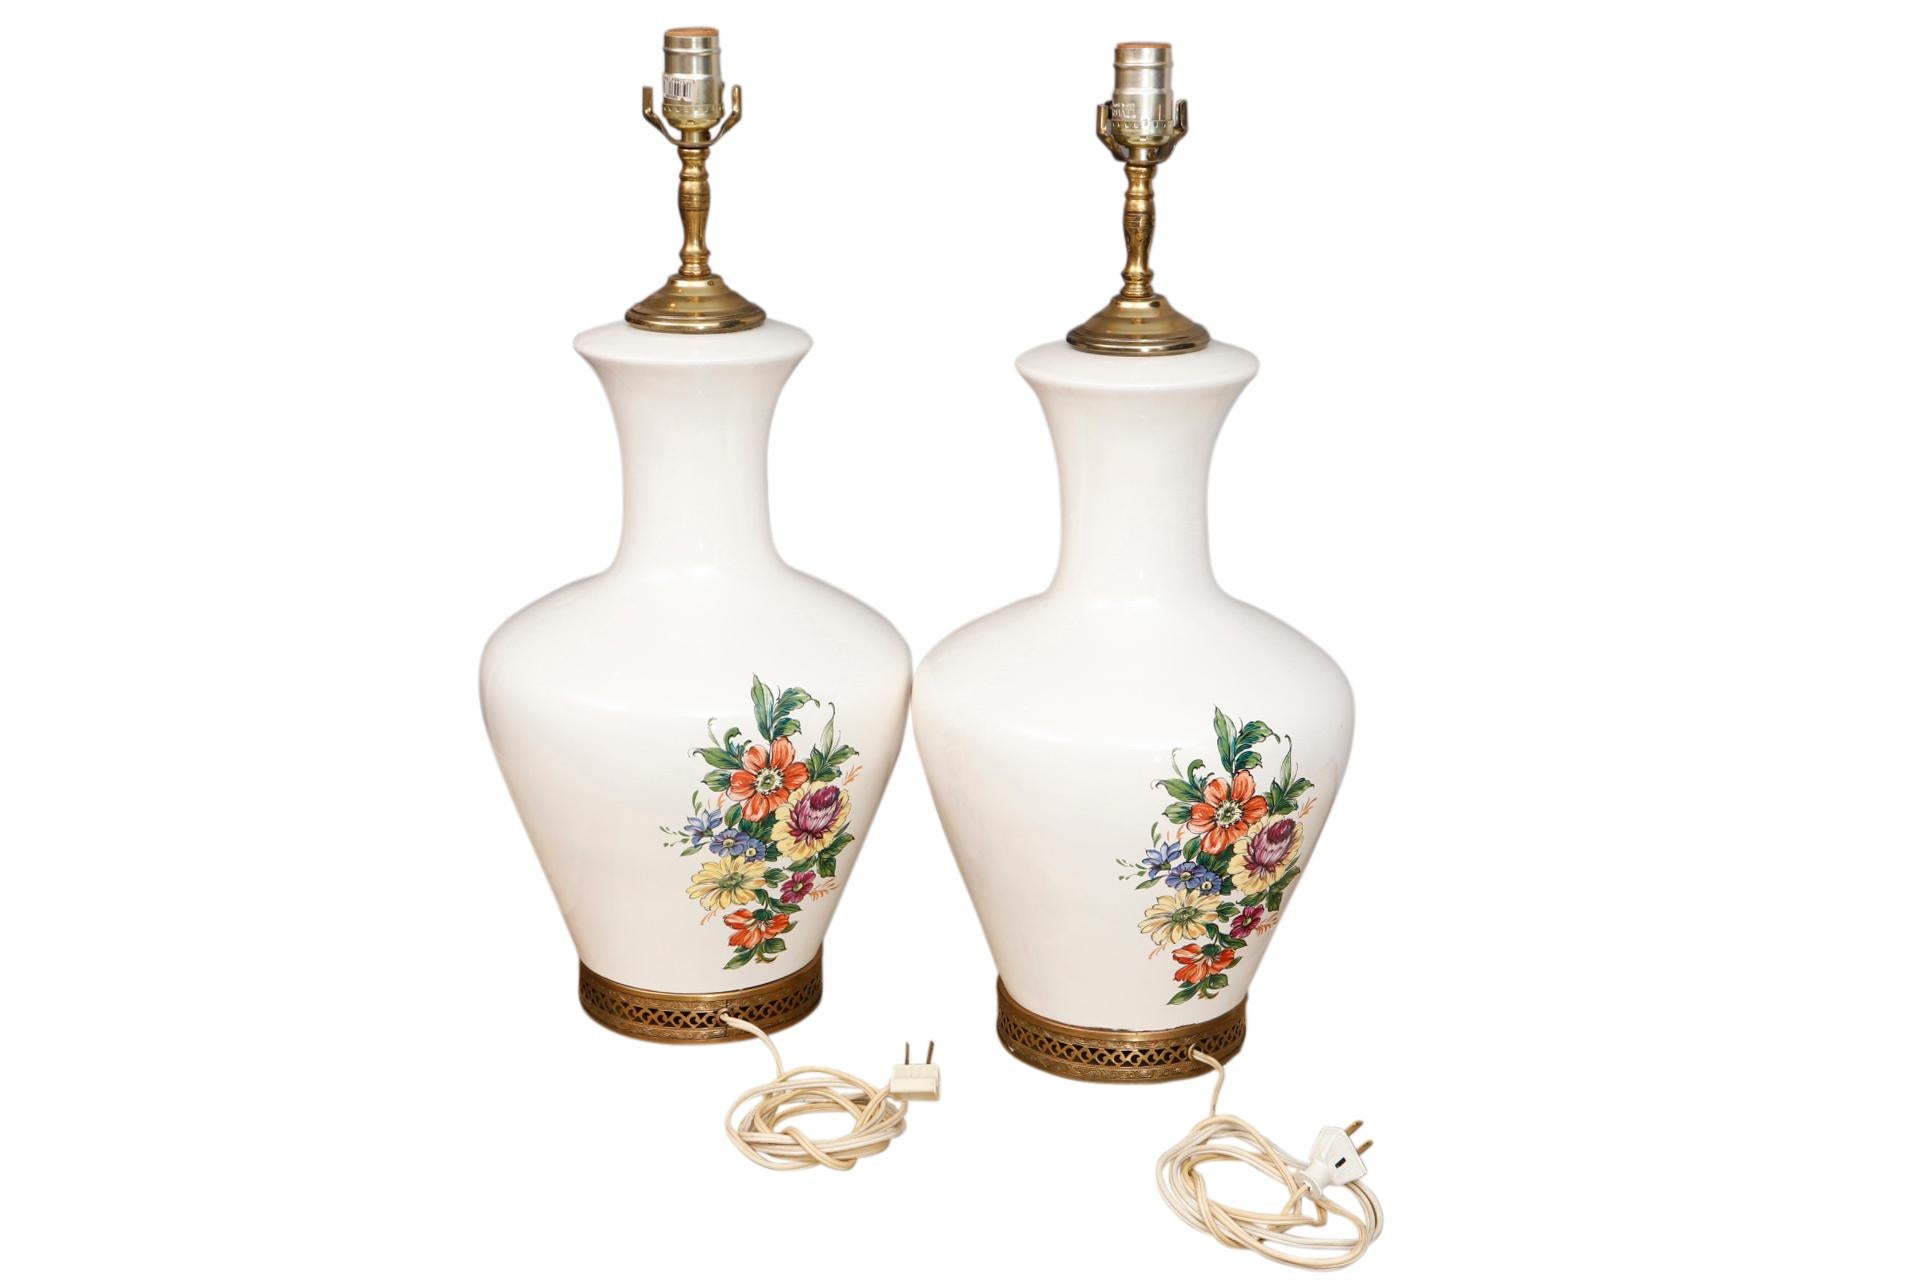 Une paire de lampes de table à fleurs blanches. Des vases simples en céramique blanche avec des cols élancés et un vase large sont décorés d'un délicat motif floral en blush, indigo et lilas, terminé par une base ornementale en laiton percé. Câblé